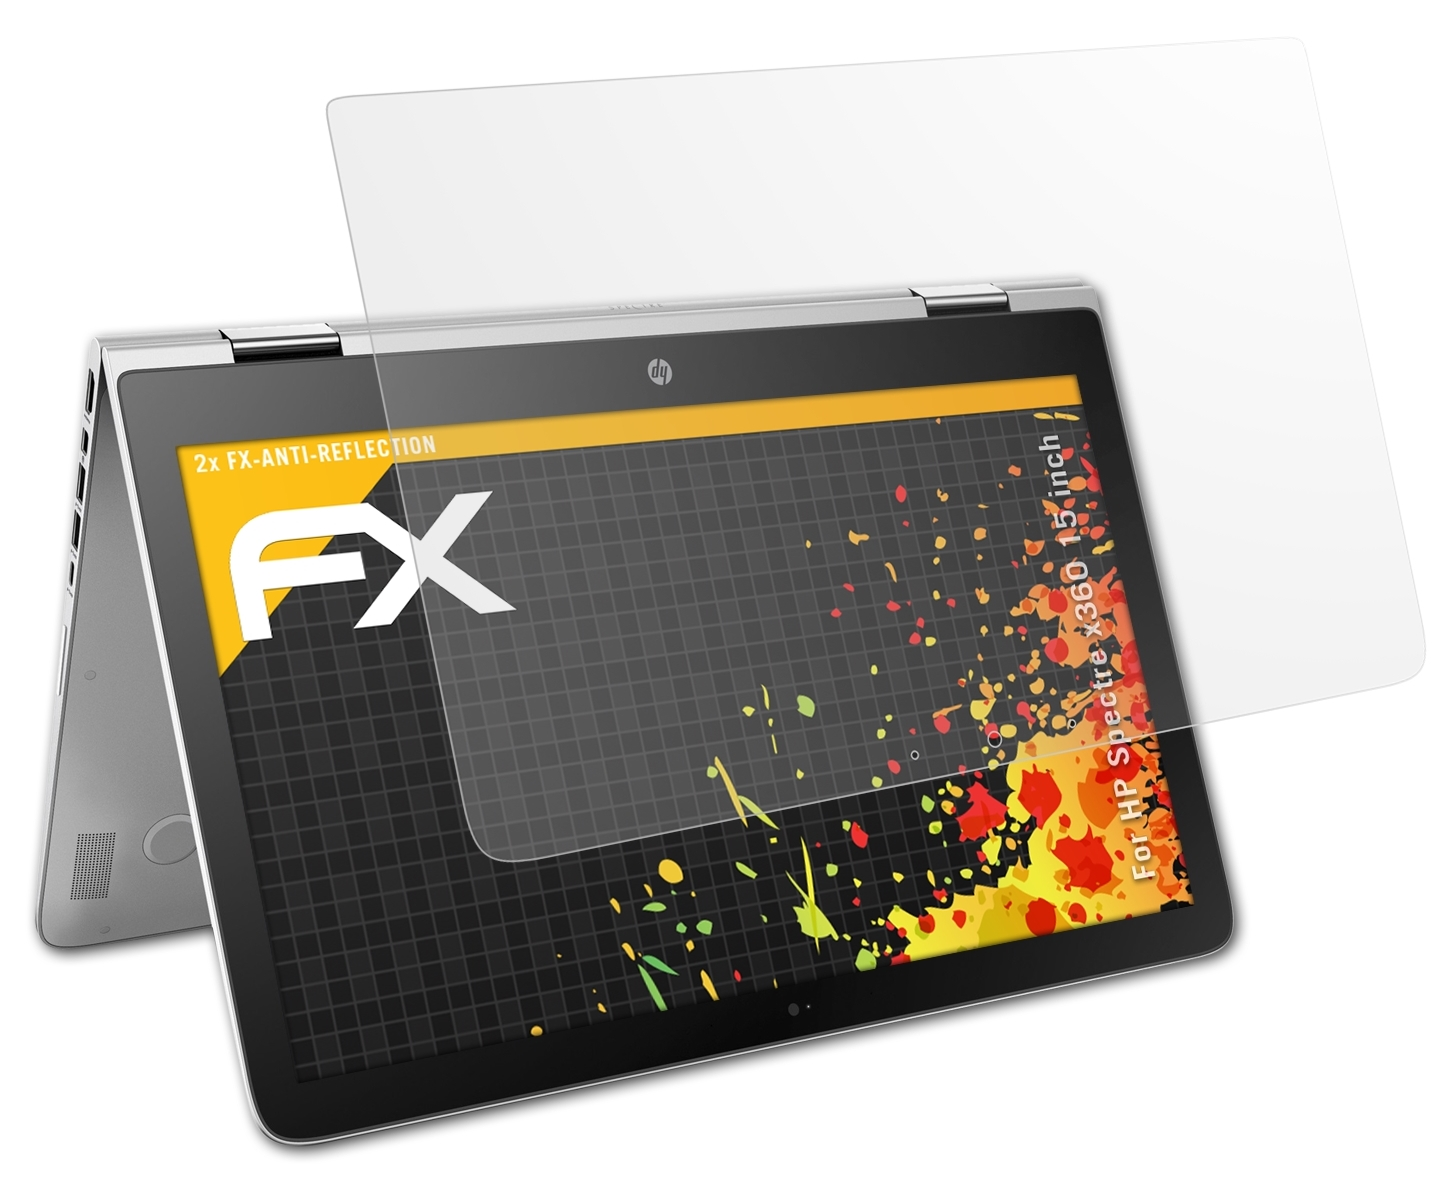 FX-Antireflex (15 Spectre Displayschutz(für HP ATFOLIX inch)) 2x x360